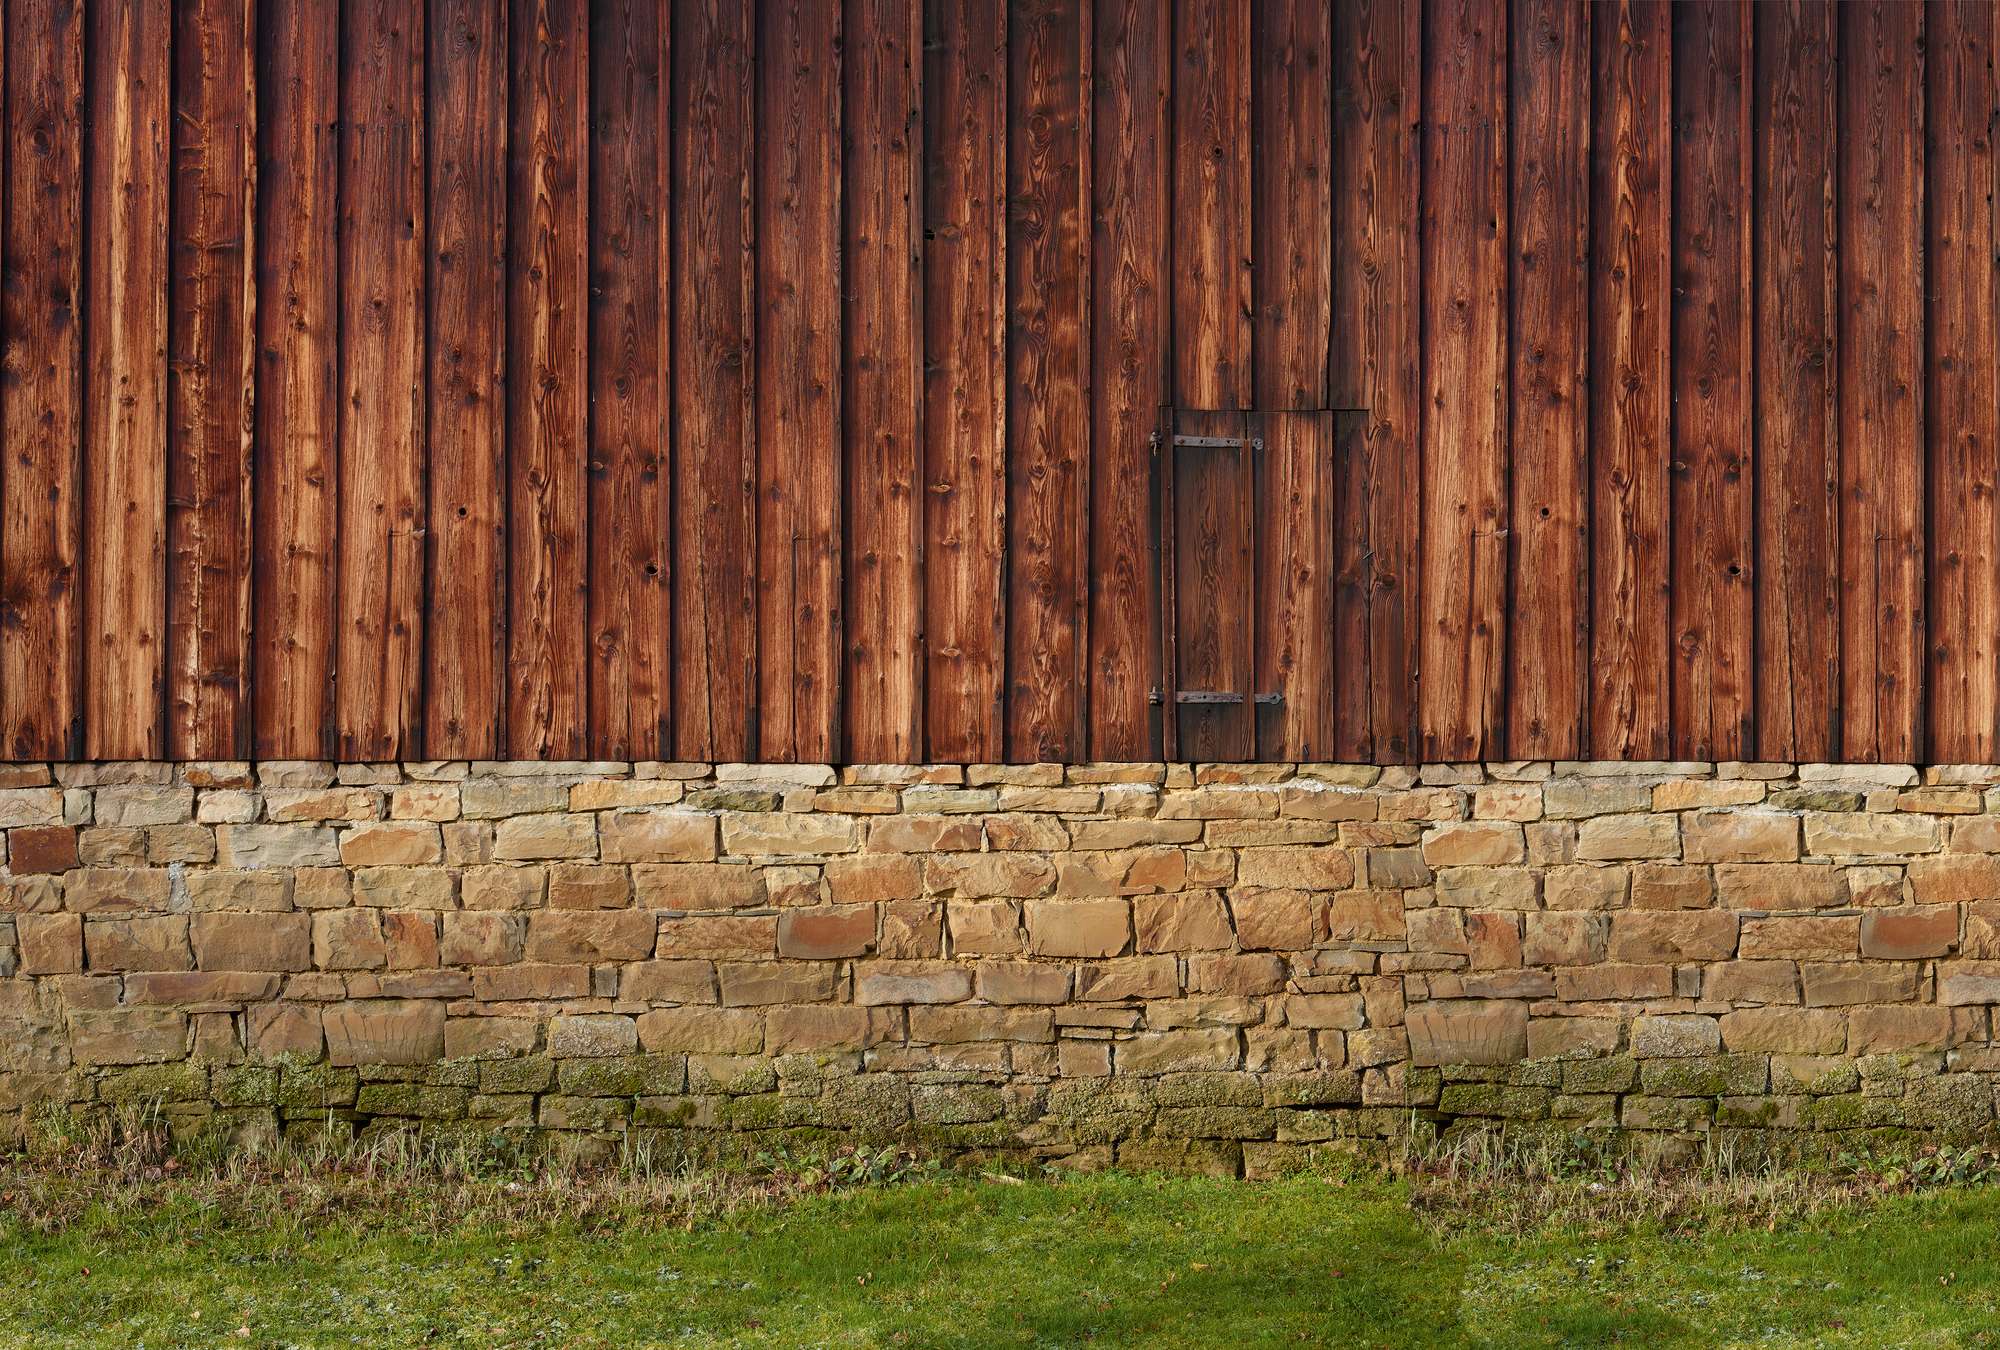             Papier peint panoramique avec façade en bois et mur en pierres naturelles
        